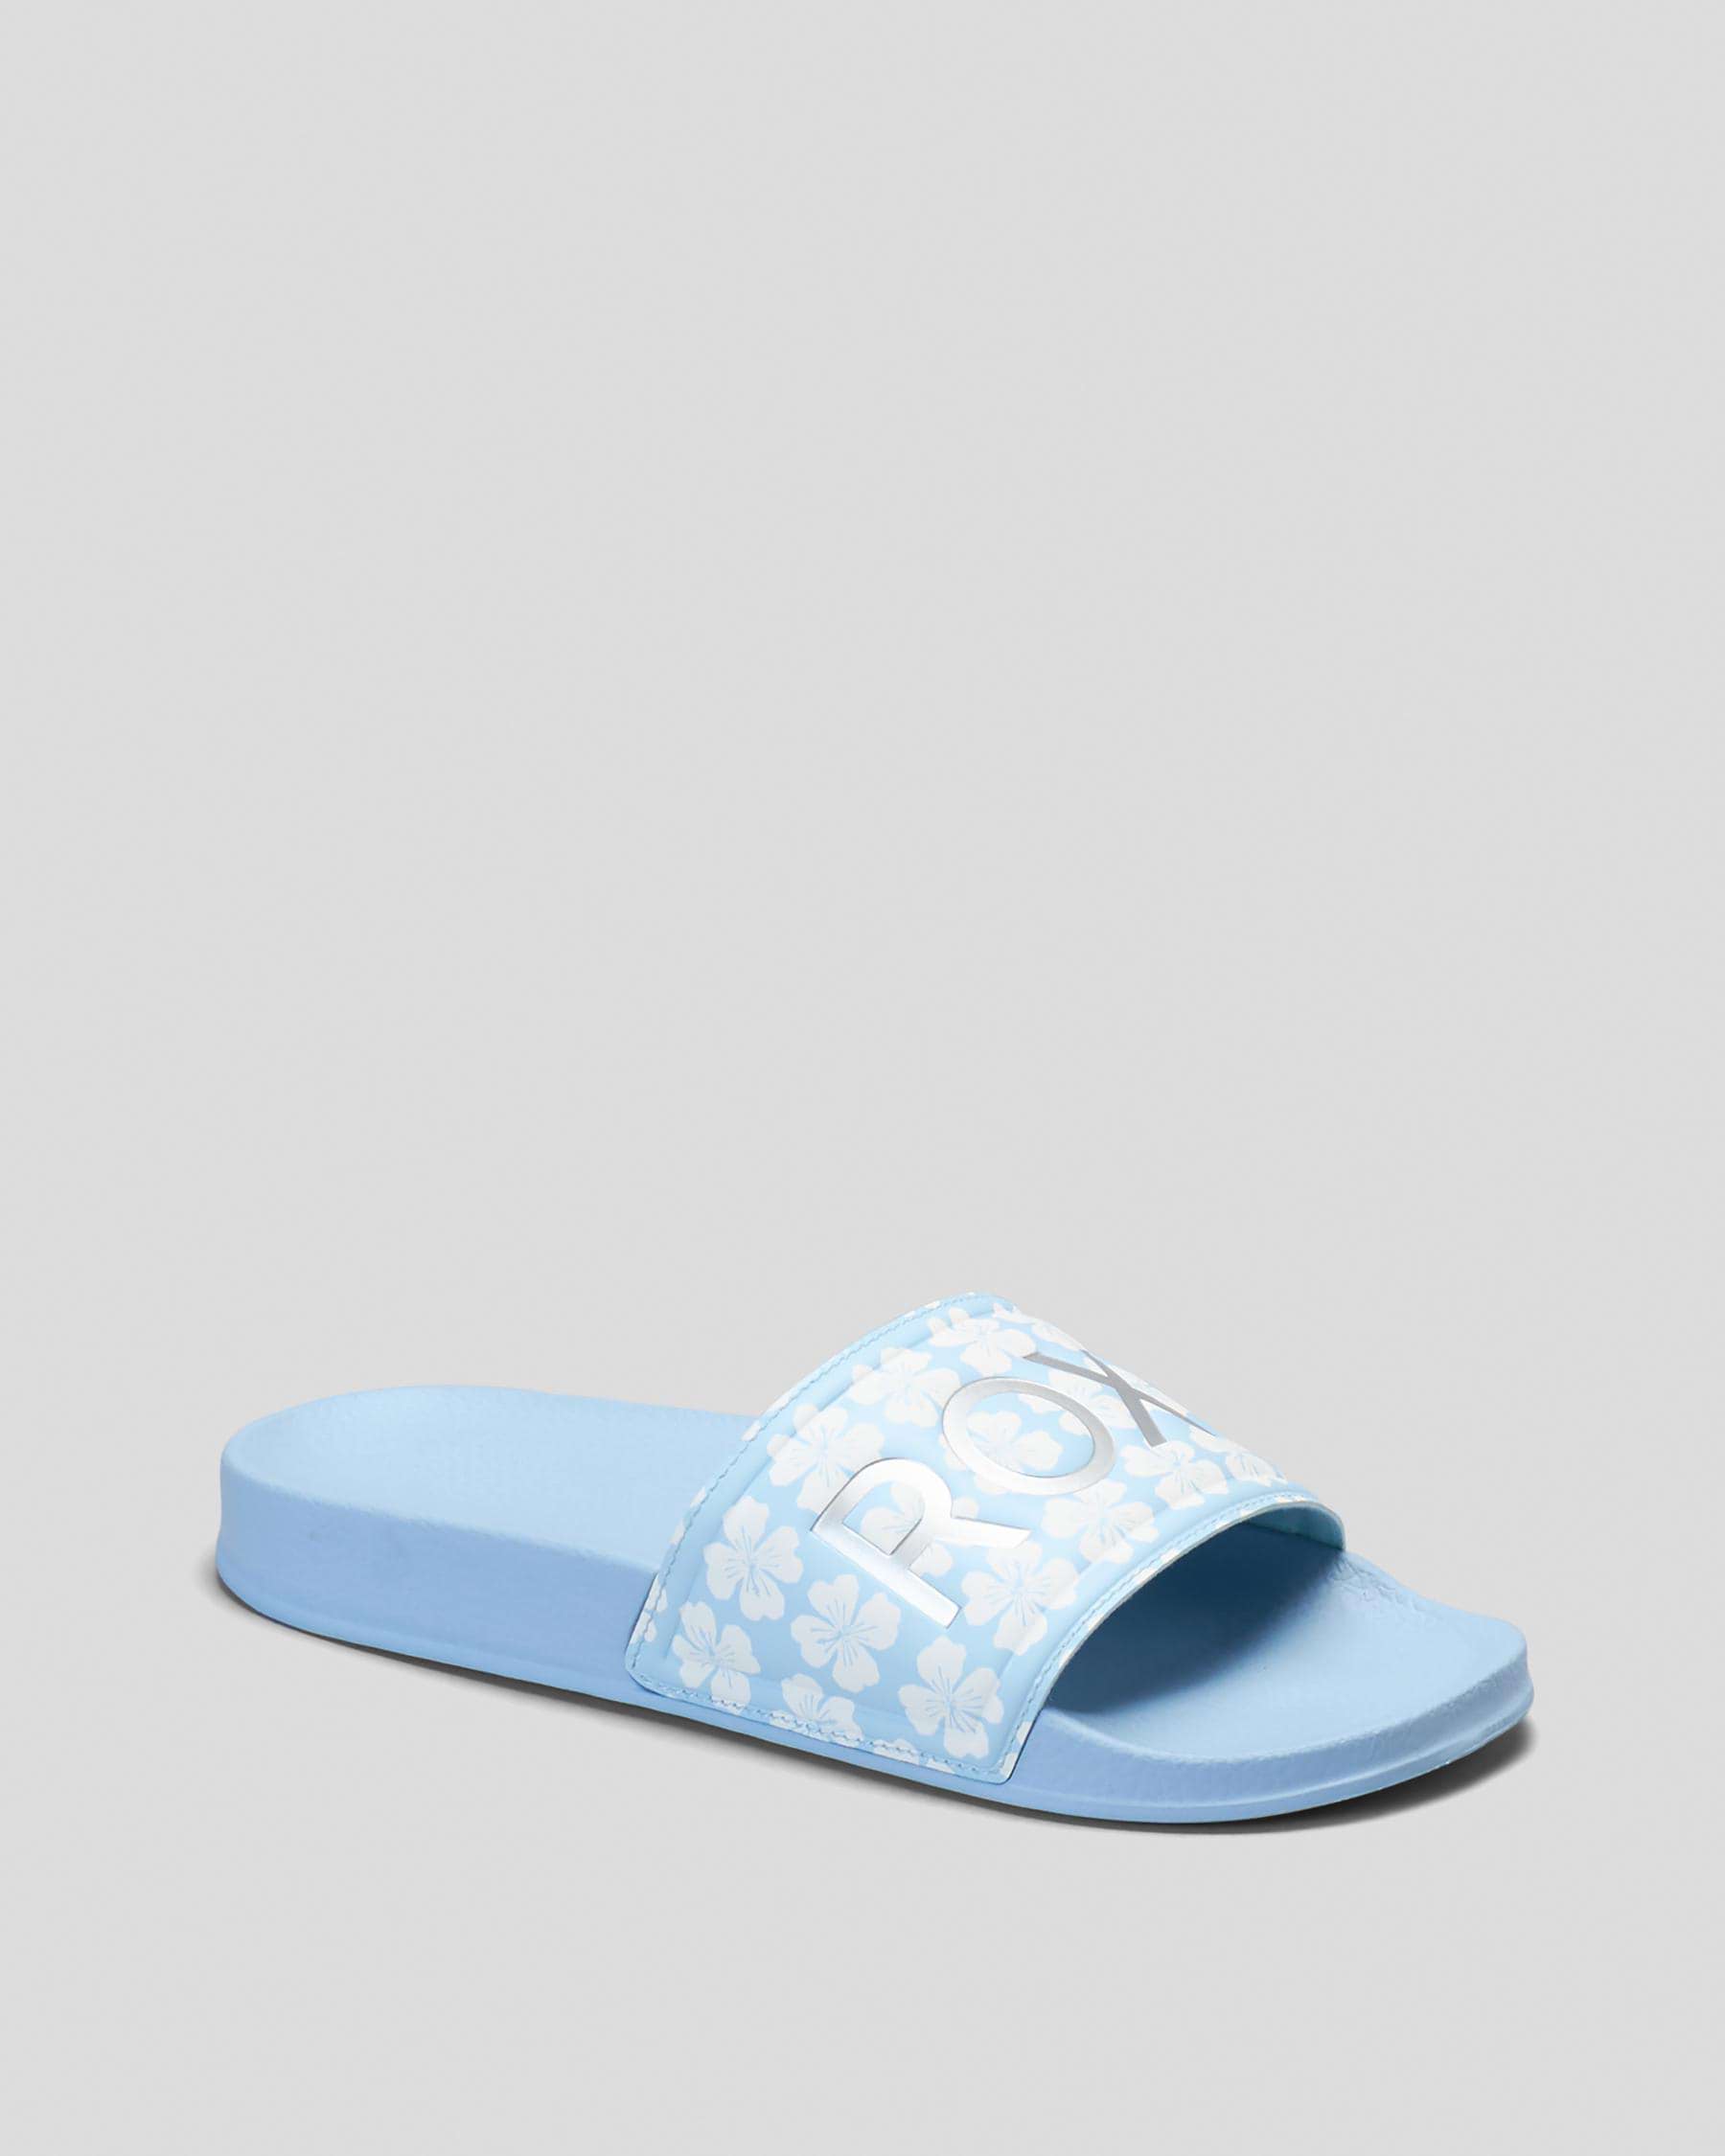 Roxy Girls' Slippy Slide Sandals In Blue/white - Fast Shipping & Easy ...